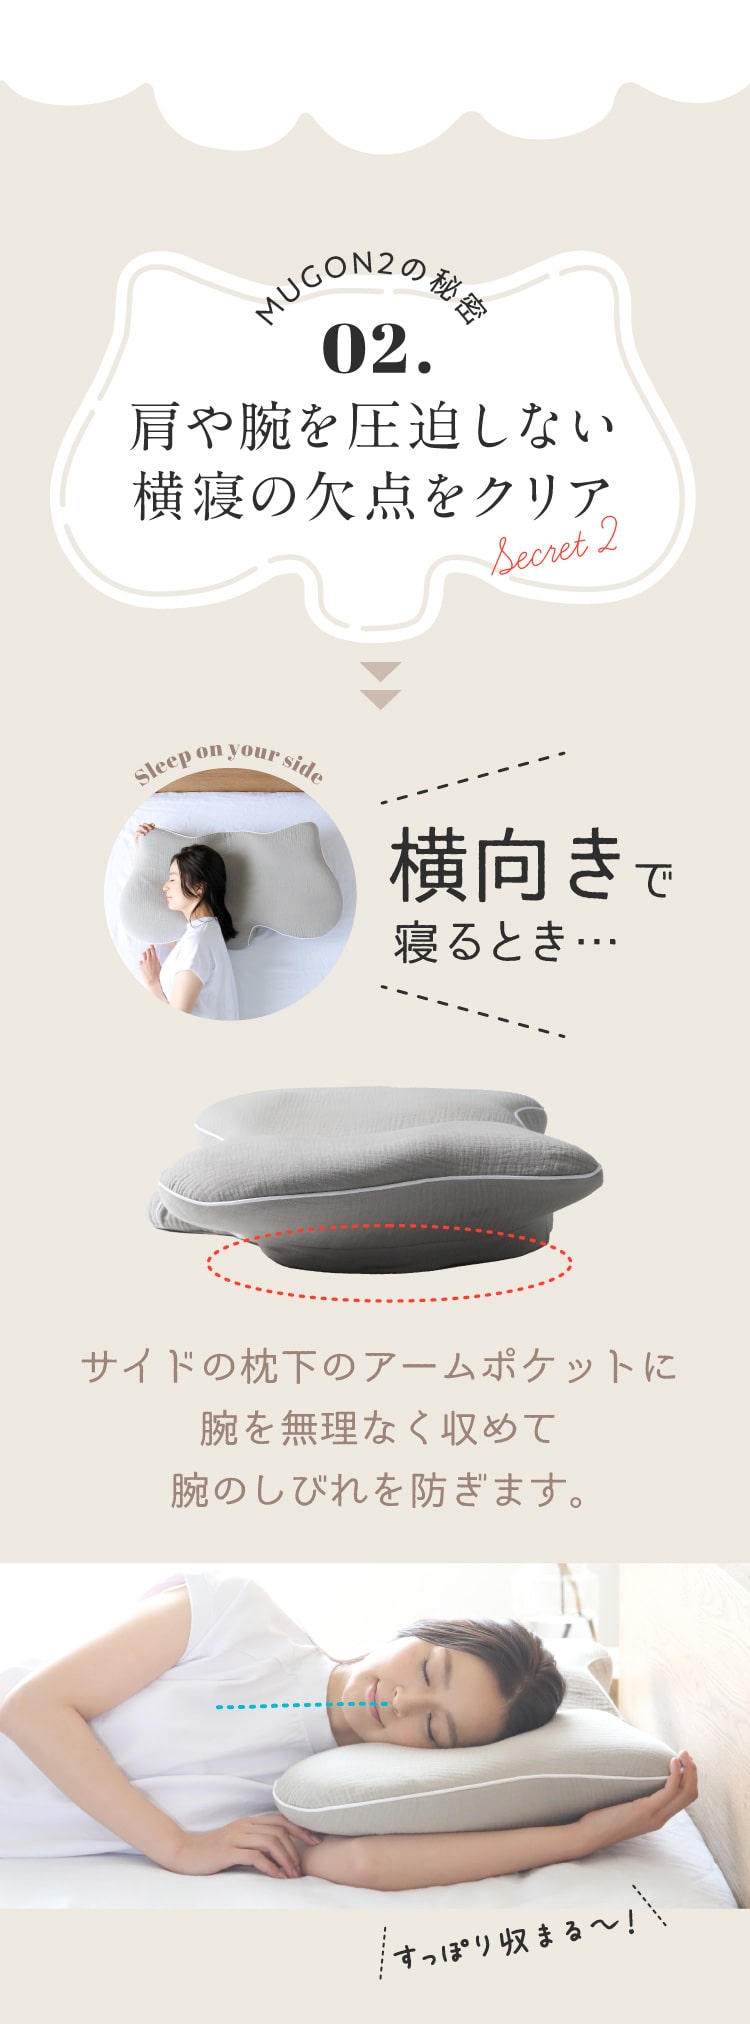 超歓迎された】 横寝枕 SU-ZI nelture MUGON2 イビキ対策 横向き寝 枕